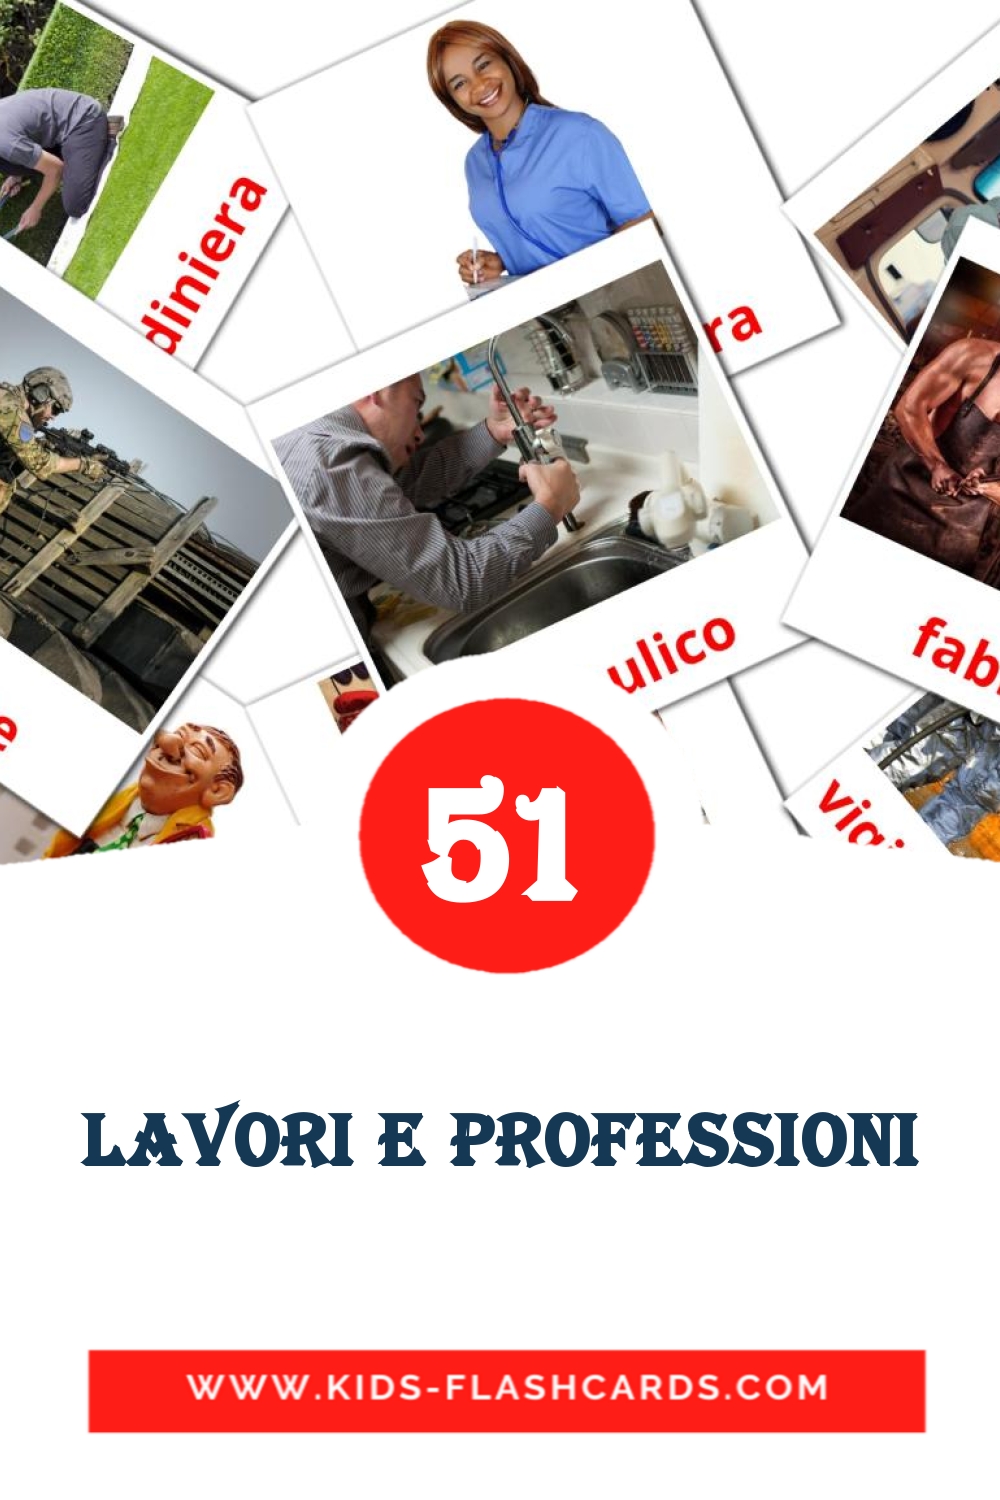 51 tarjetas didacticas de Lavori e professioni para el jardín de infancia en italiano